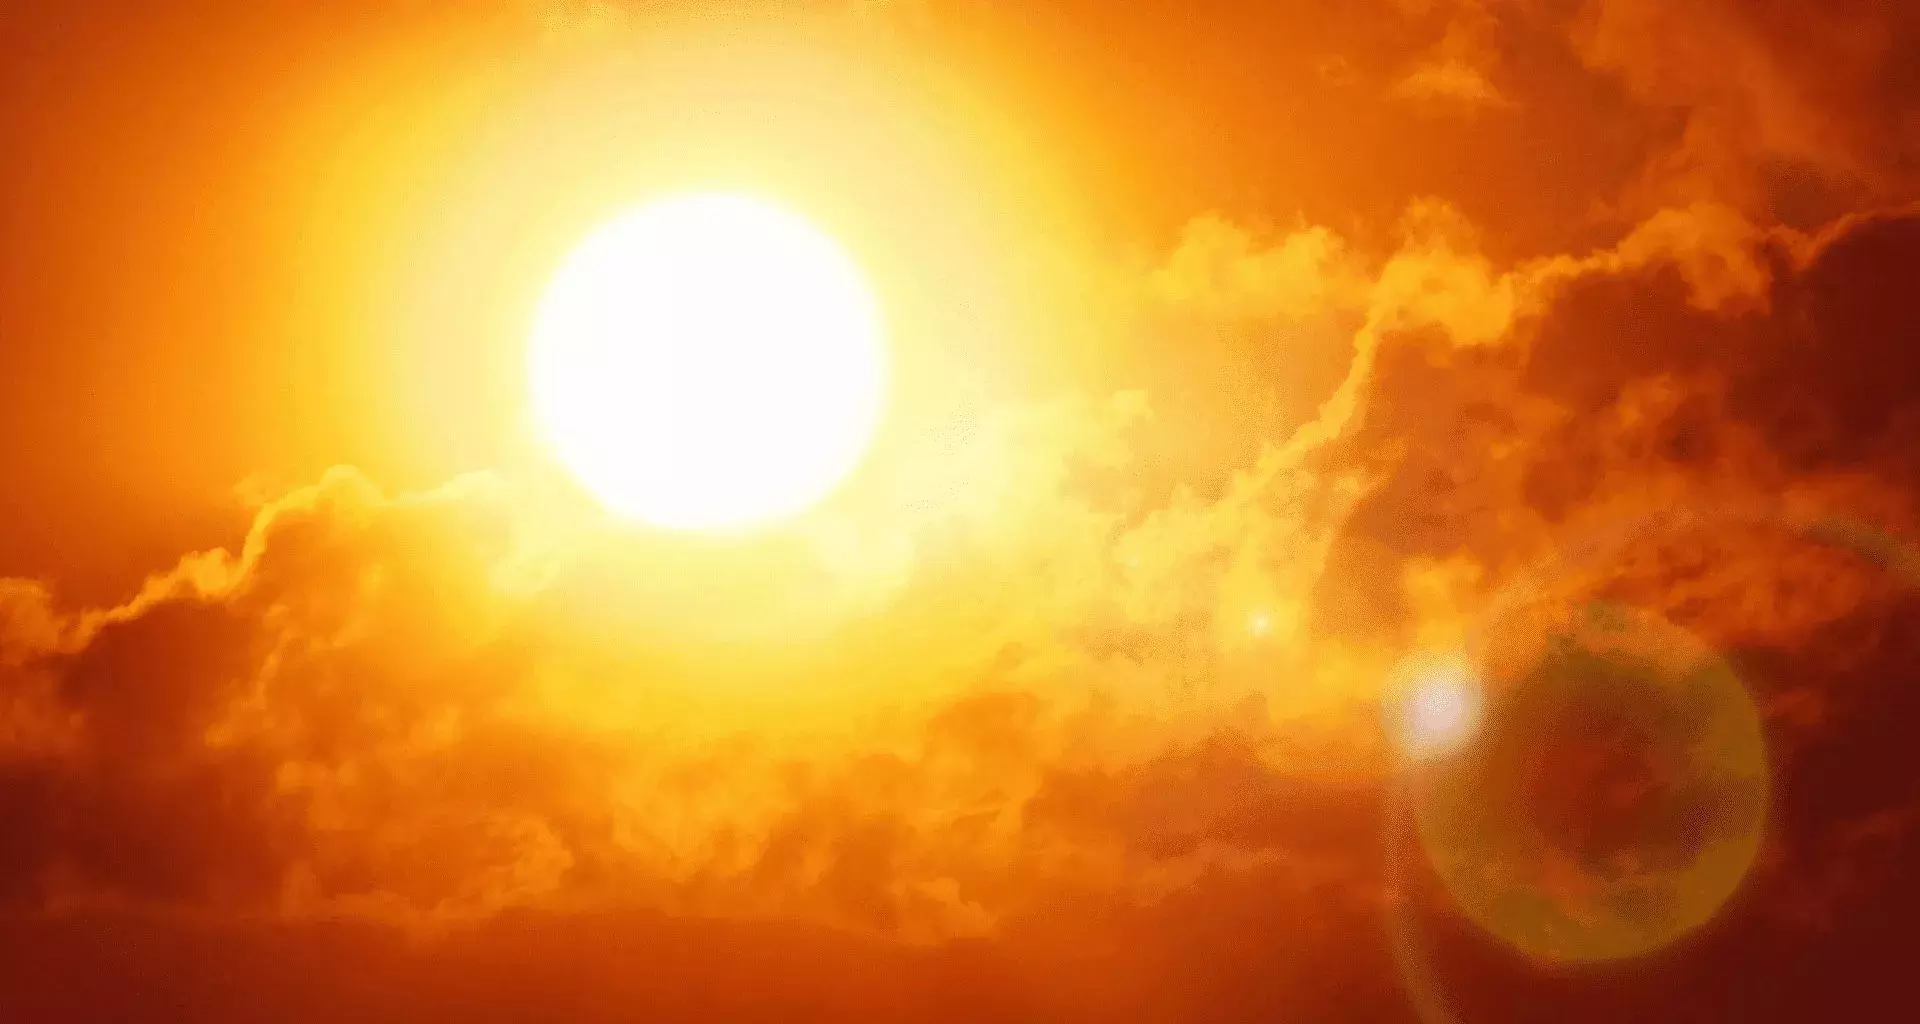 Fotografía del sol reflejando sus rayos en el cielo con tonalidades rojizas/naranjas por altas temperaturas.